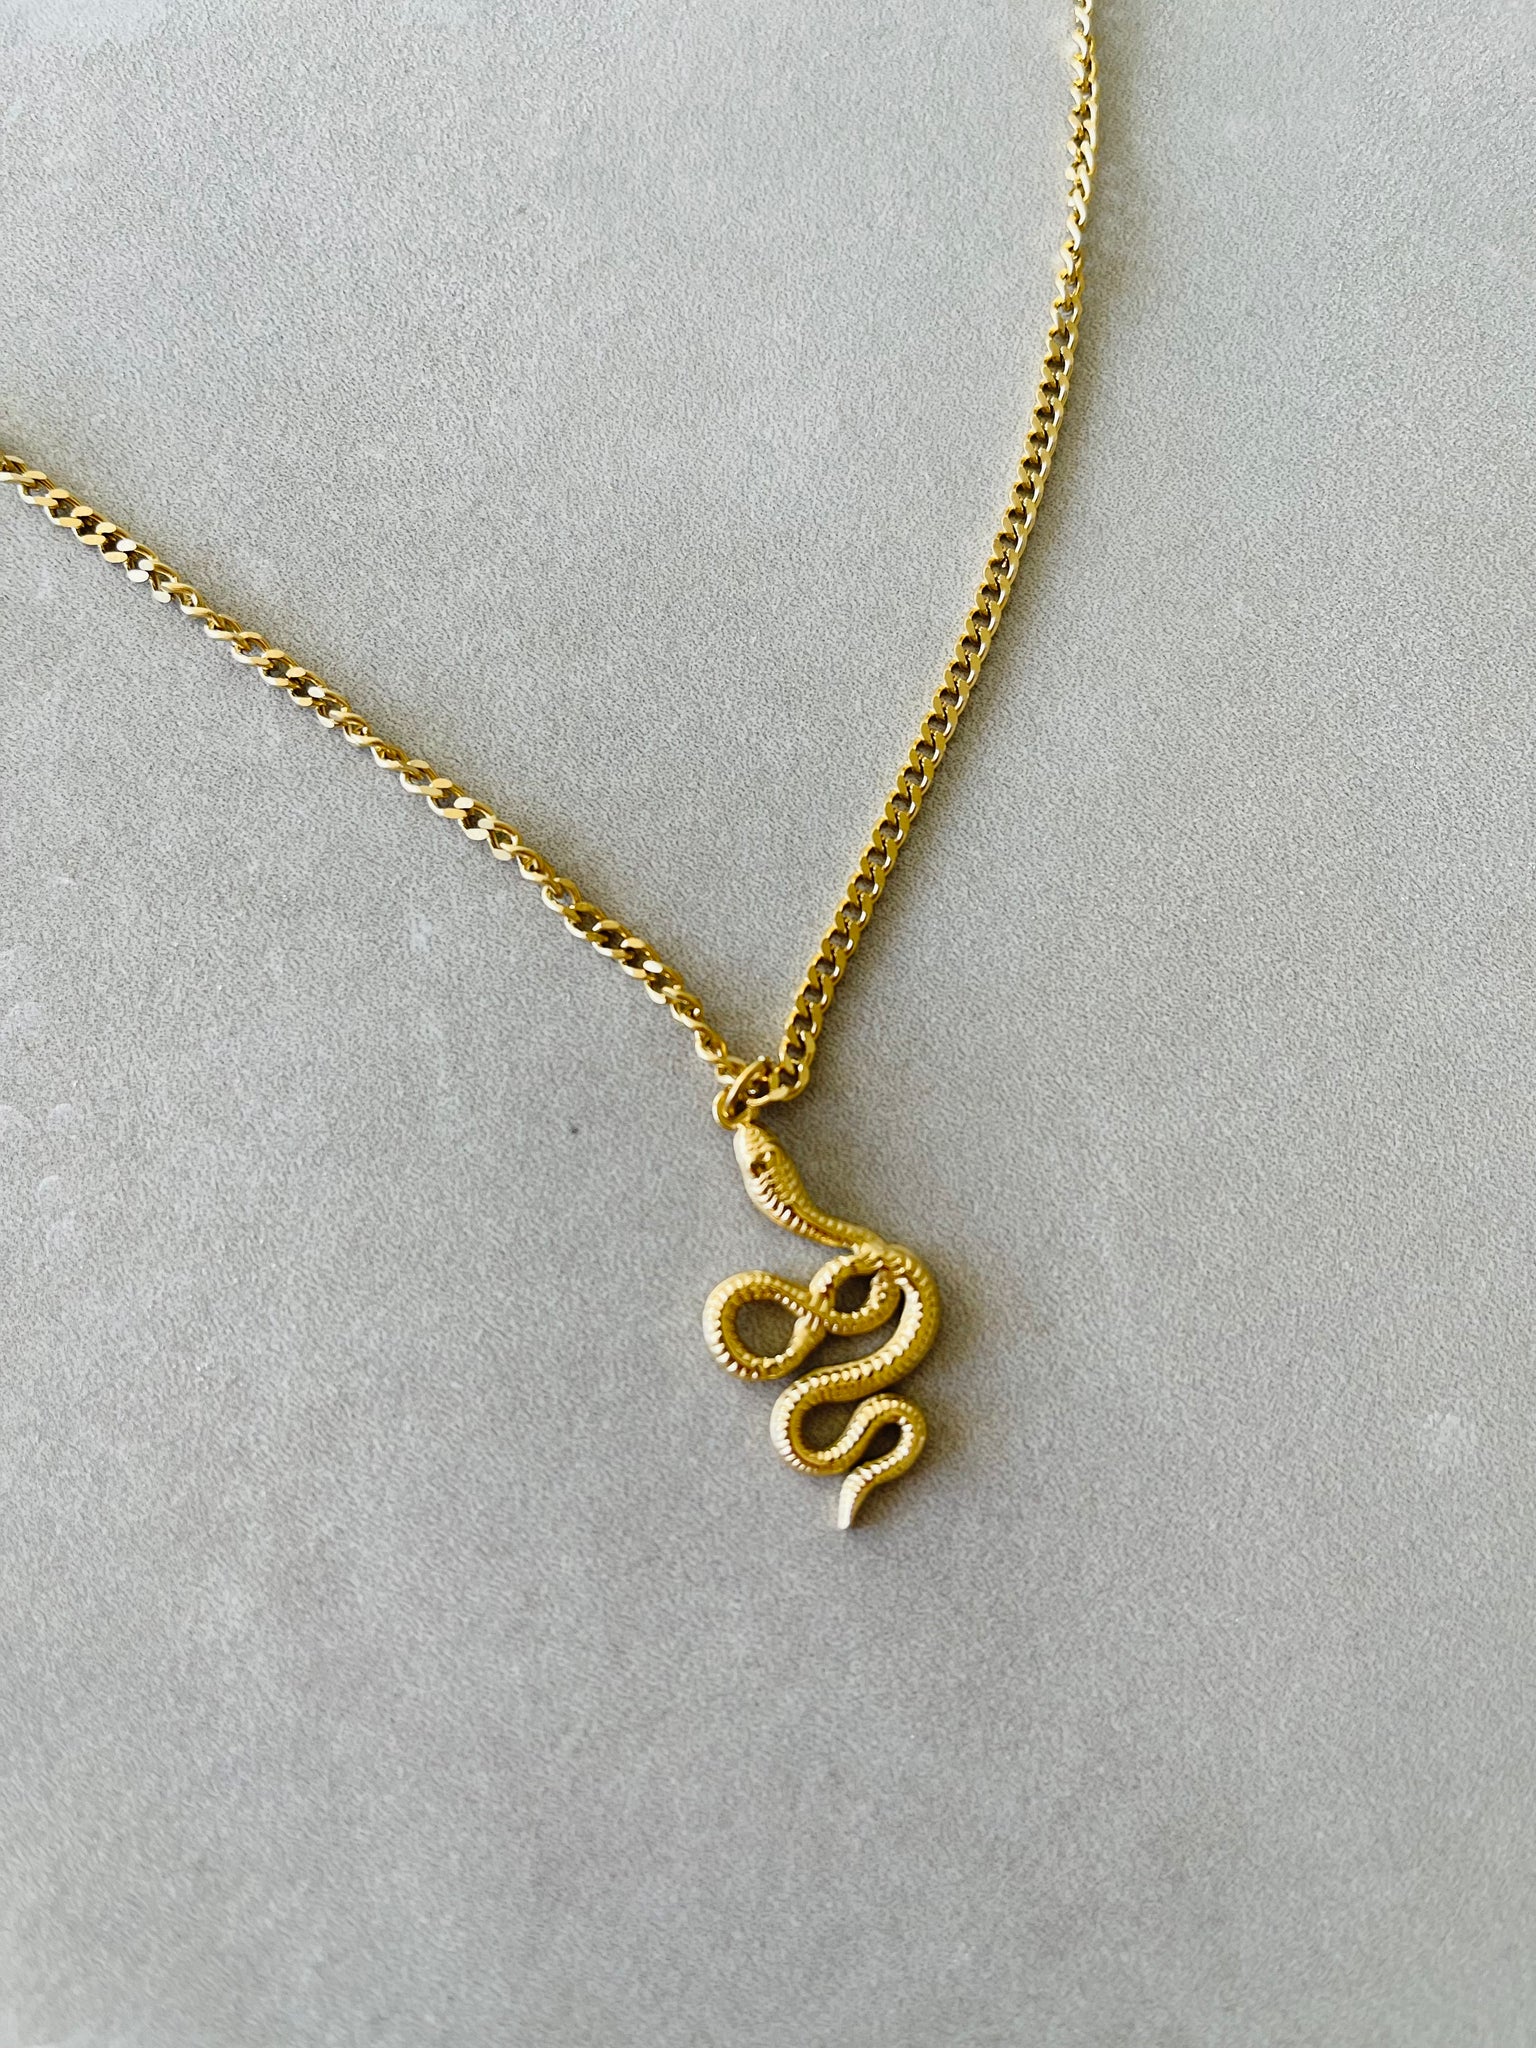 Vintage Snake Necklace - Gold